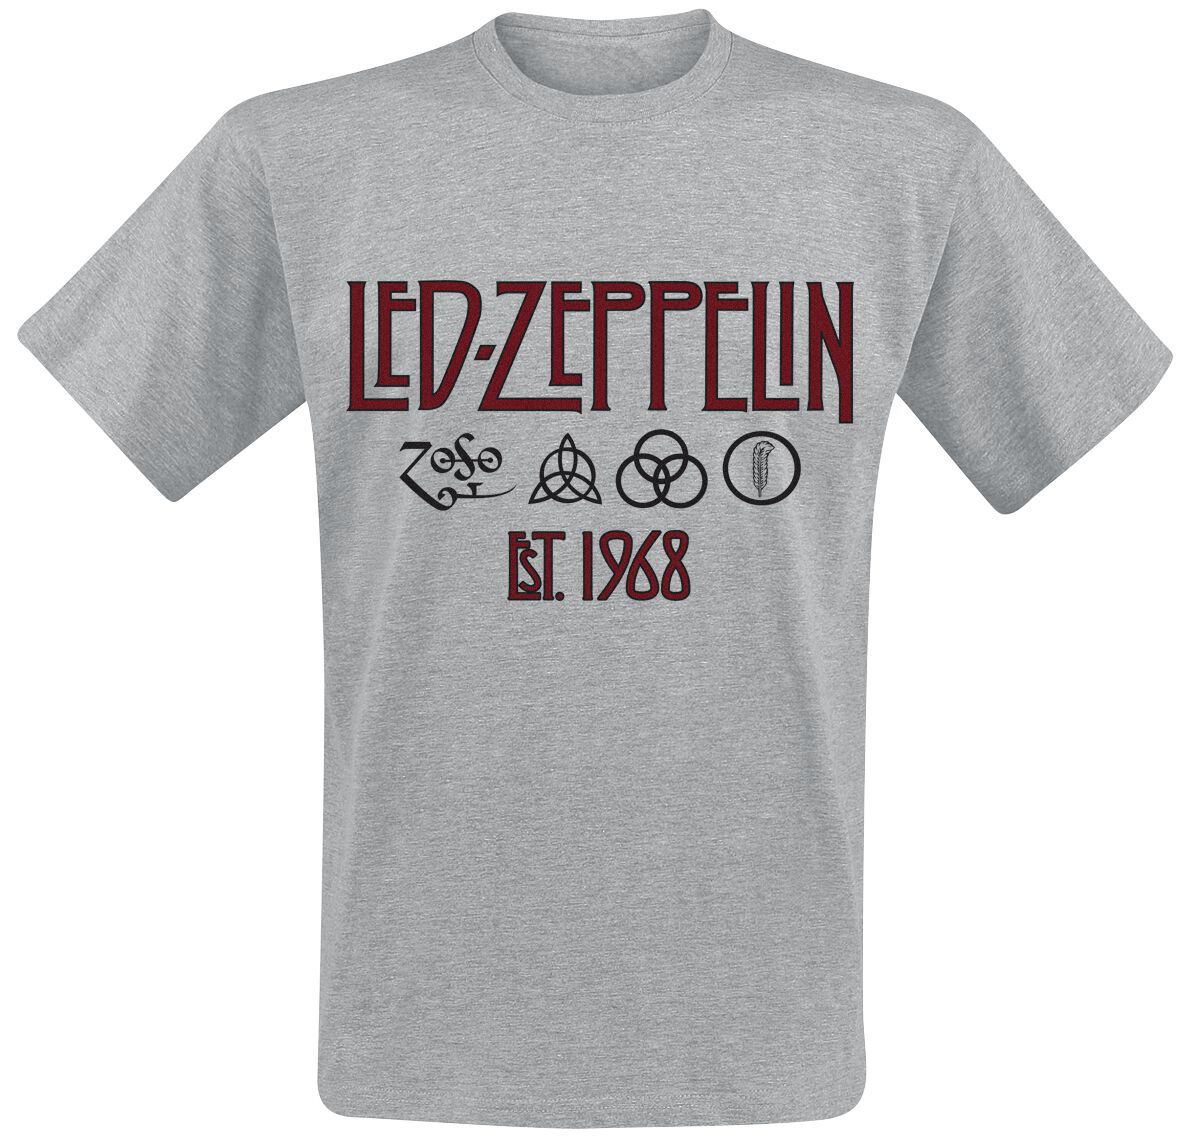 Led Zeppelin T-Shirt - Symbols Est. 1968 - M bis 3XL - für Männer - Größe XXL - grau meliert  - Lizenziertes Merchandise!